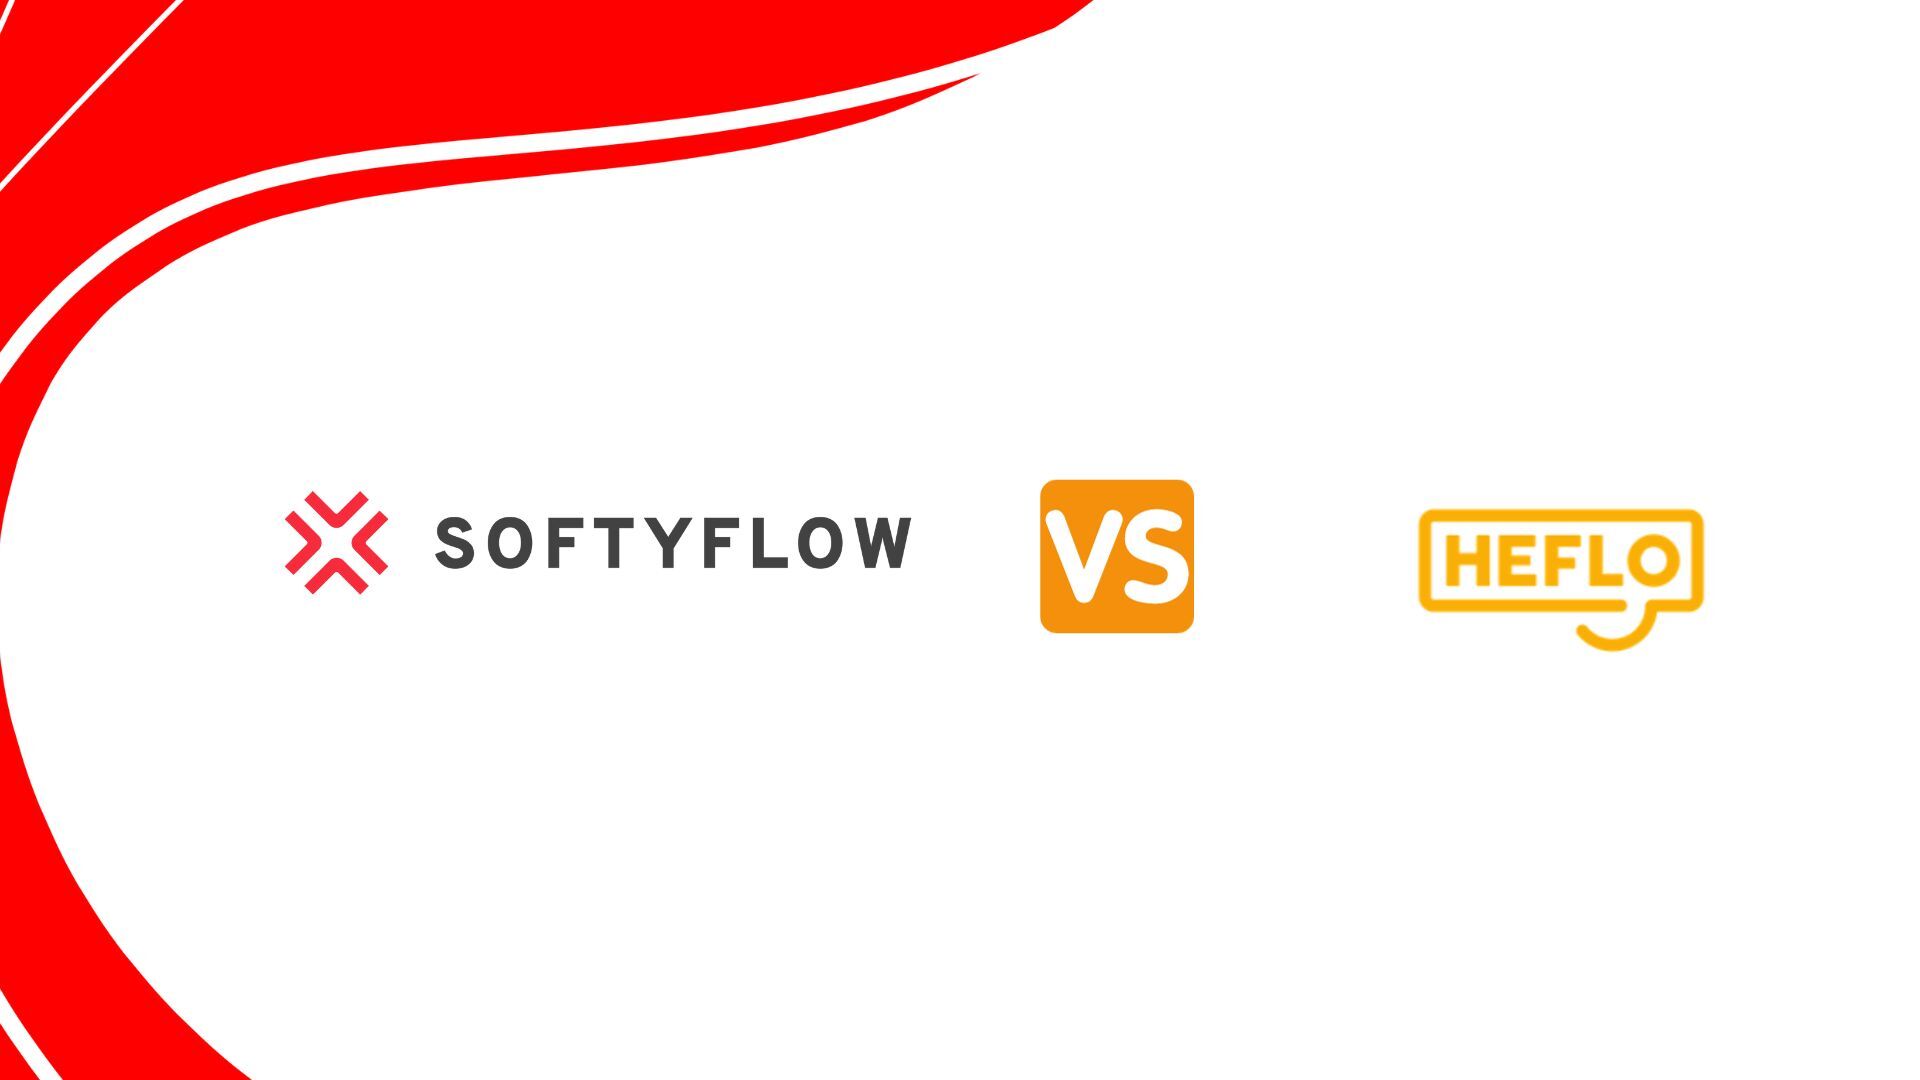 softyflow vs heflo